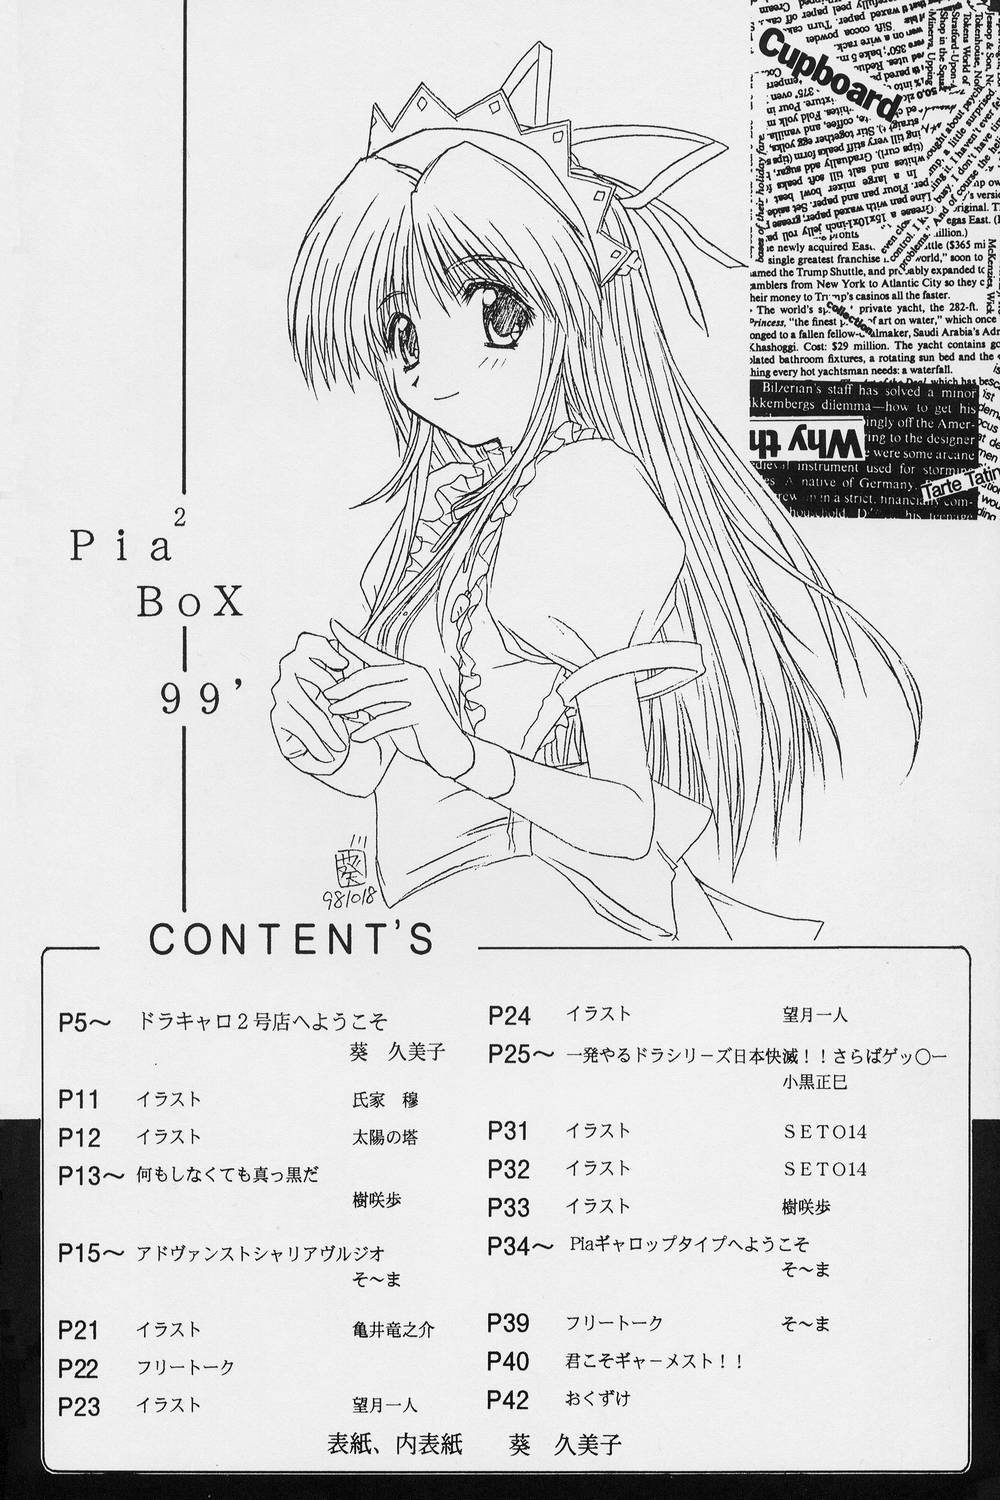 [ばたあくっきい (よろず)] Pia2 BOX 99’ (Piaキャロットへようこそ!!)